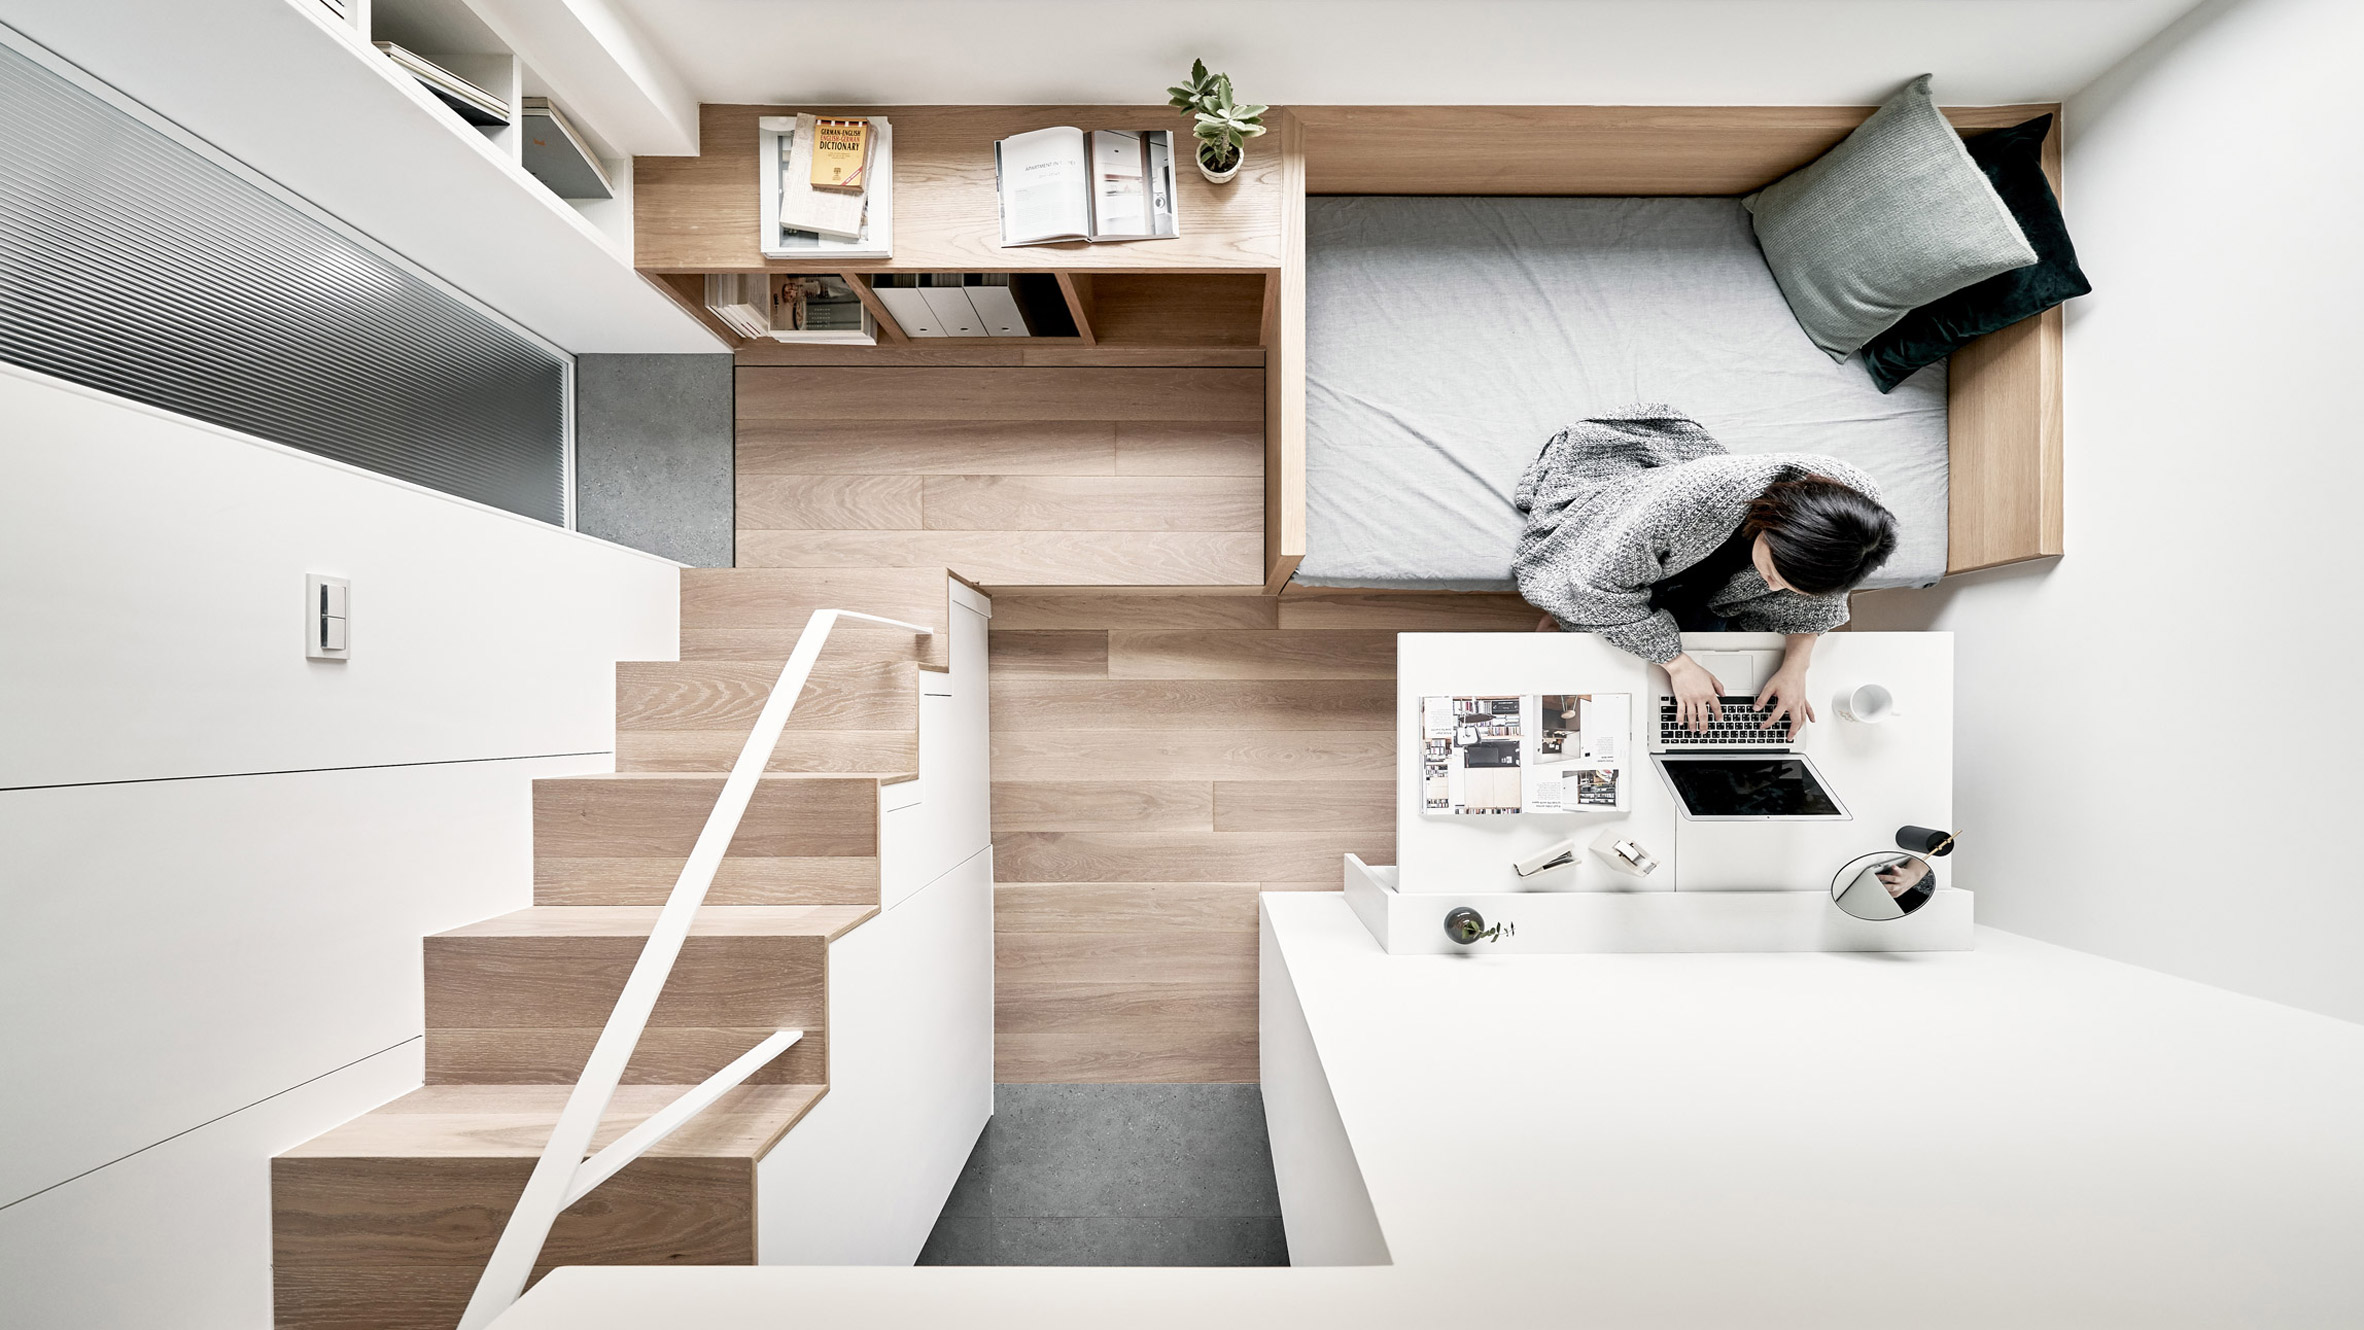 Микро апартамент в Тайван е обзаведен с вградени мебели | 3 апр 2019